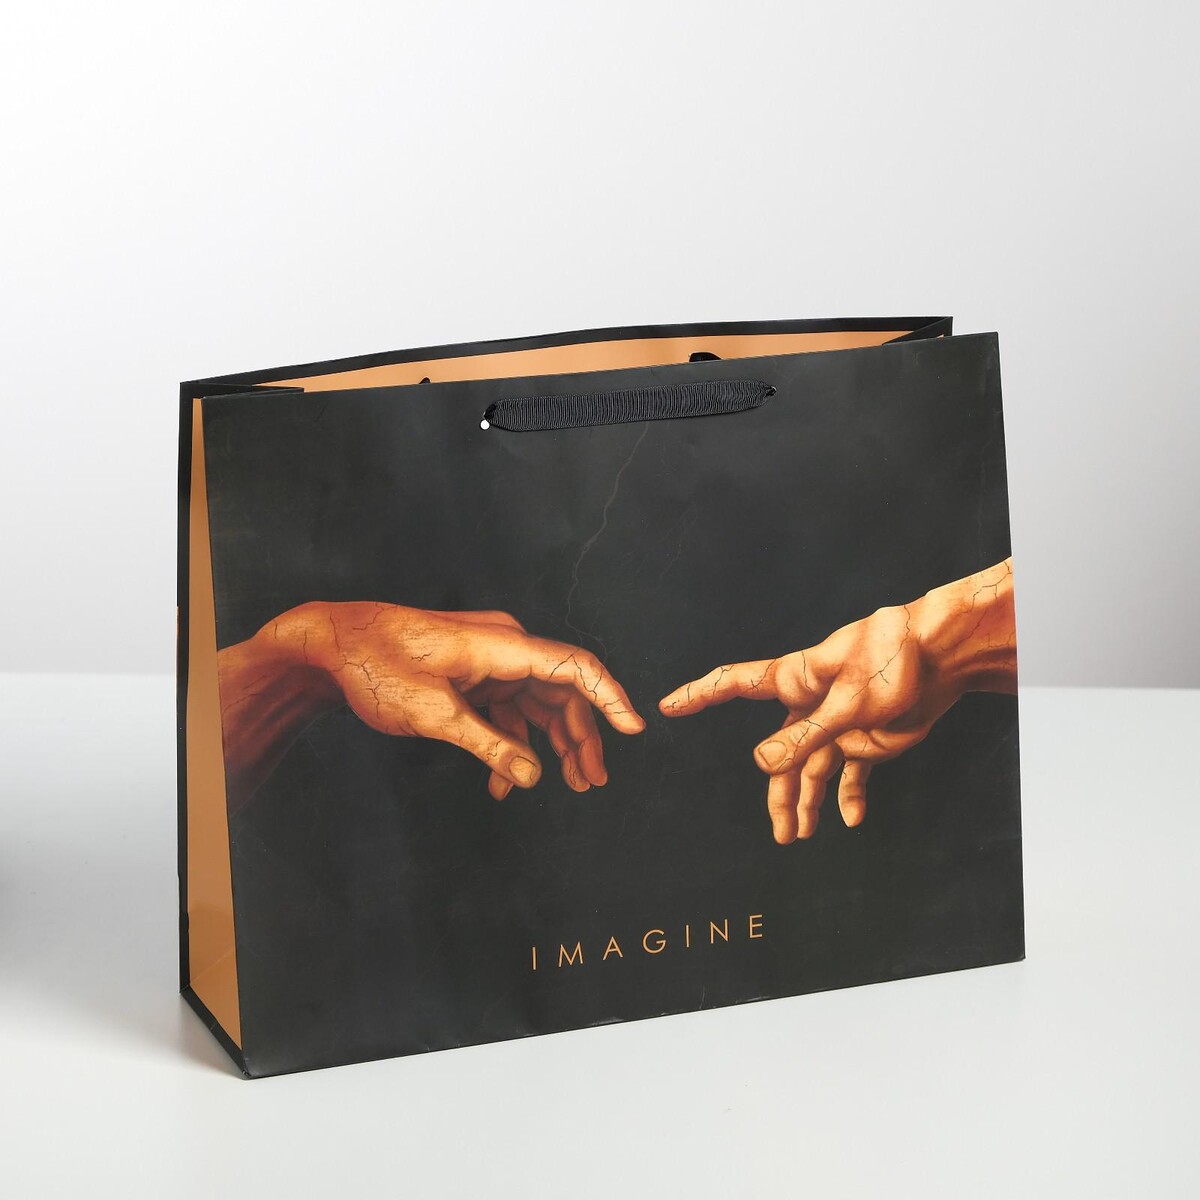 Пакет подарочный ламинированный горизонтальный, упаковка, imagine, l 40 х 31 х 11,5 см imagine me